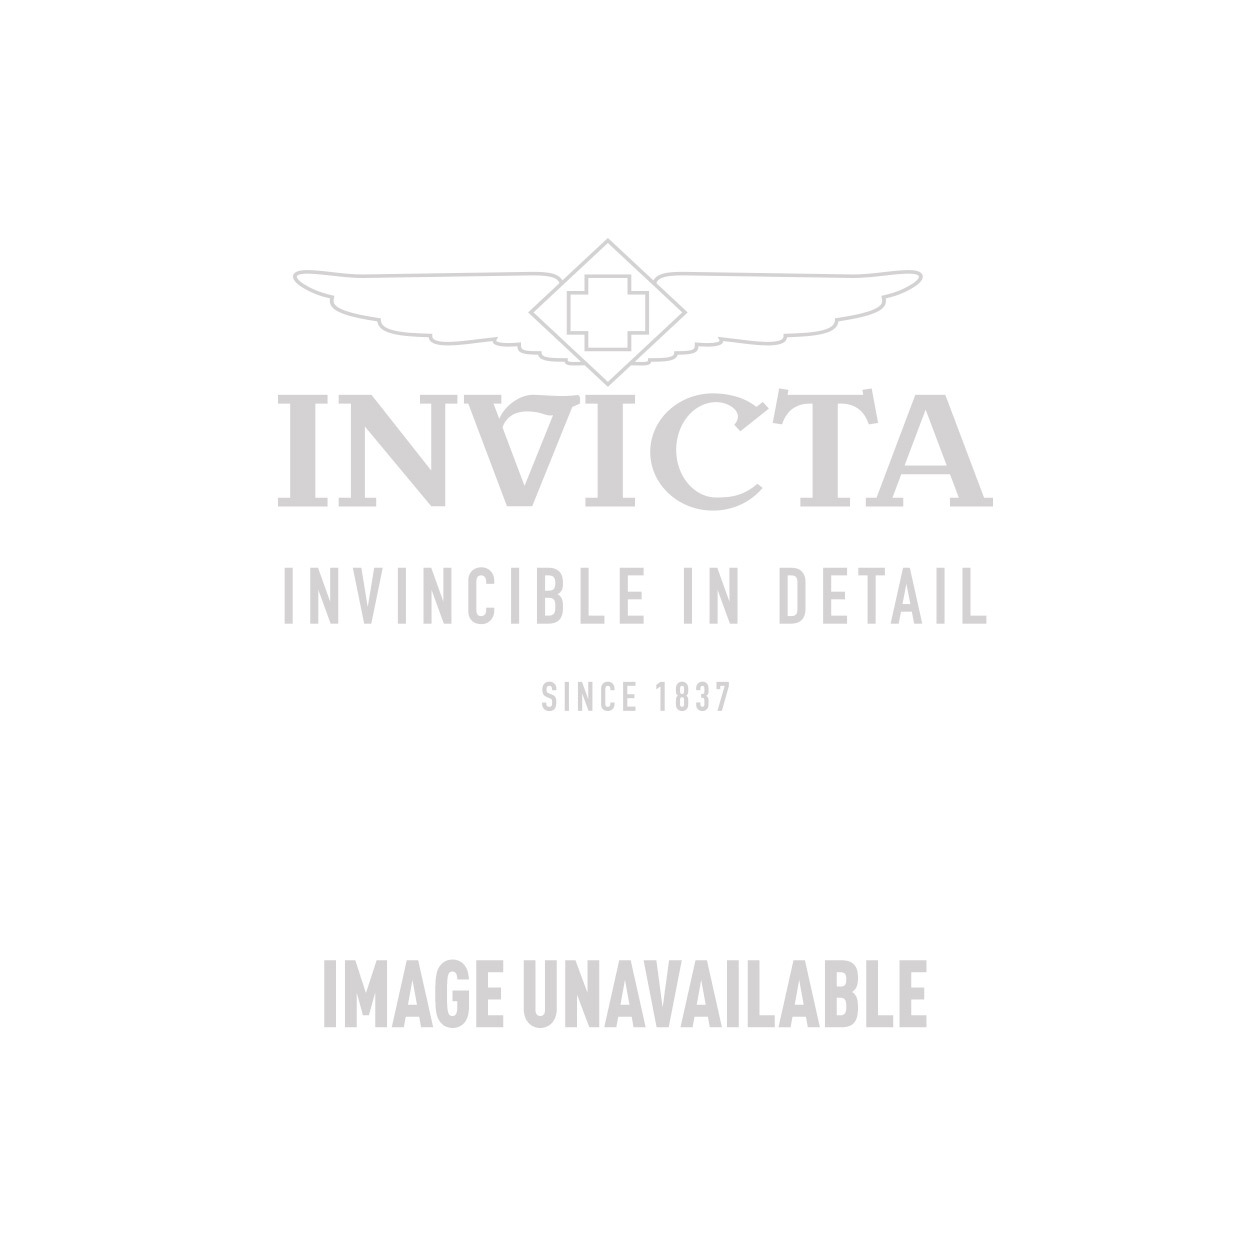 Invicta Model 31505